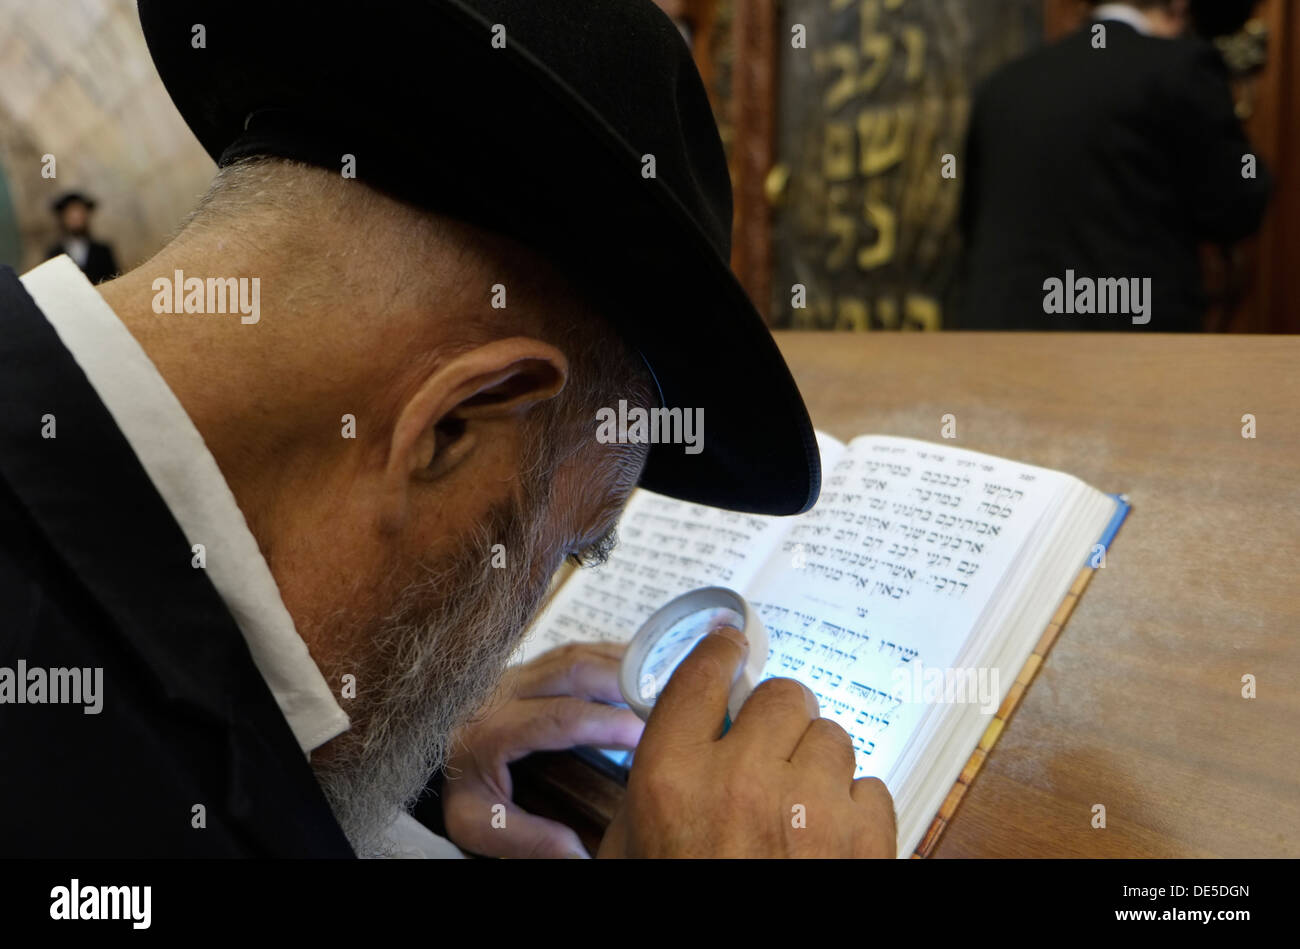 Ultra un ebreo ortodosso leggendo il Sidur libro di preghiera nella sinagoga del Muro occidentale di Gerusalemme Est Israele Foto Stock